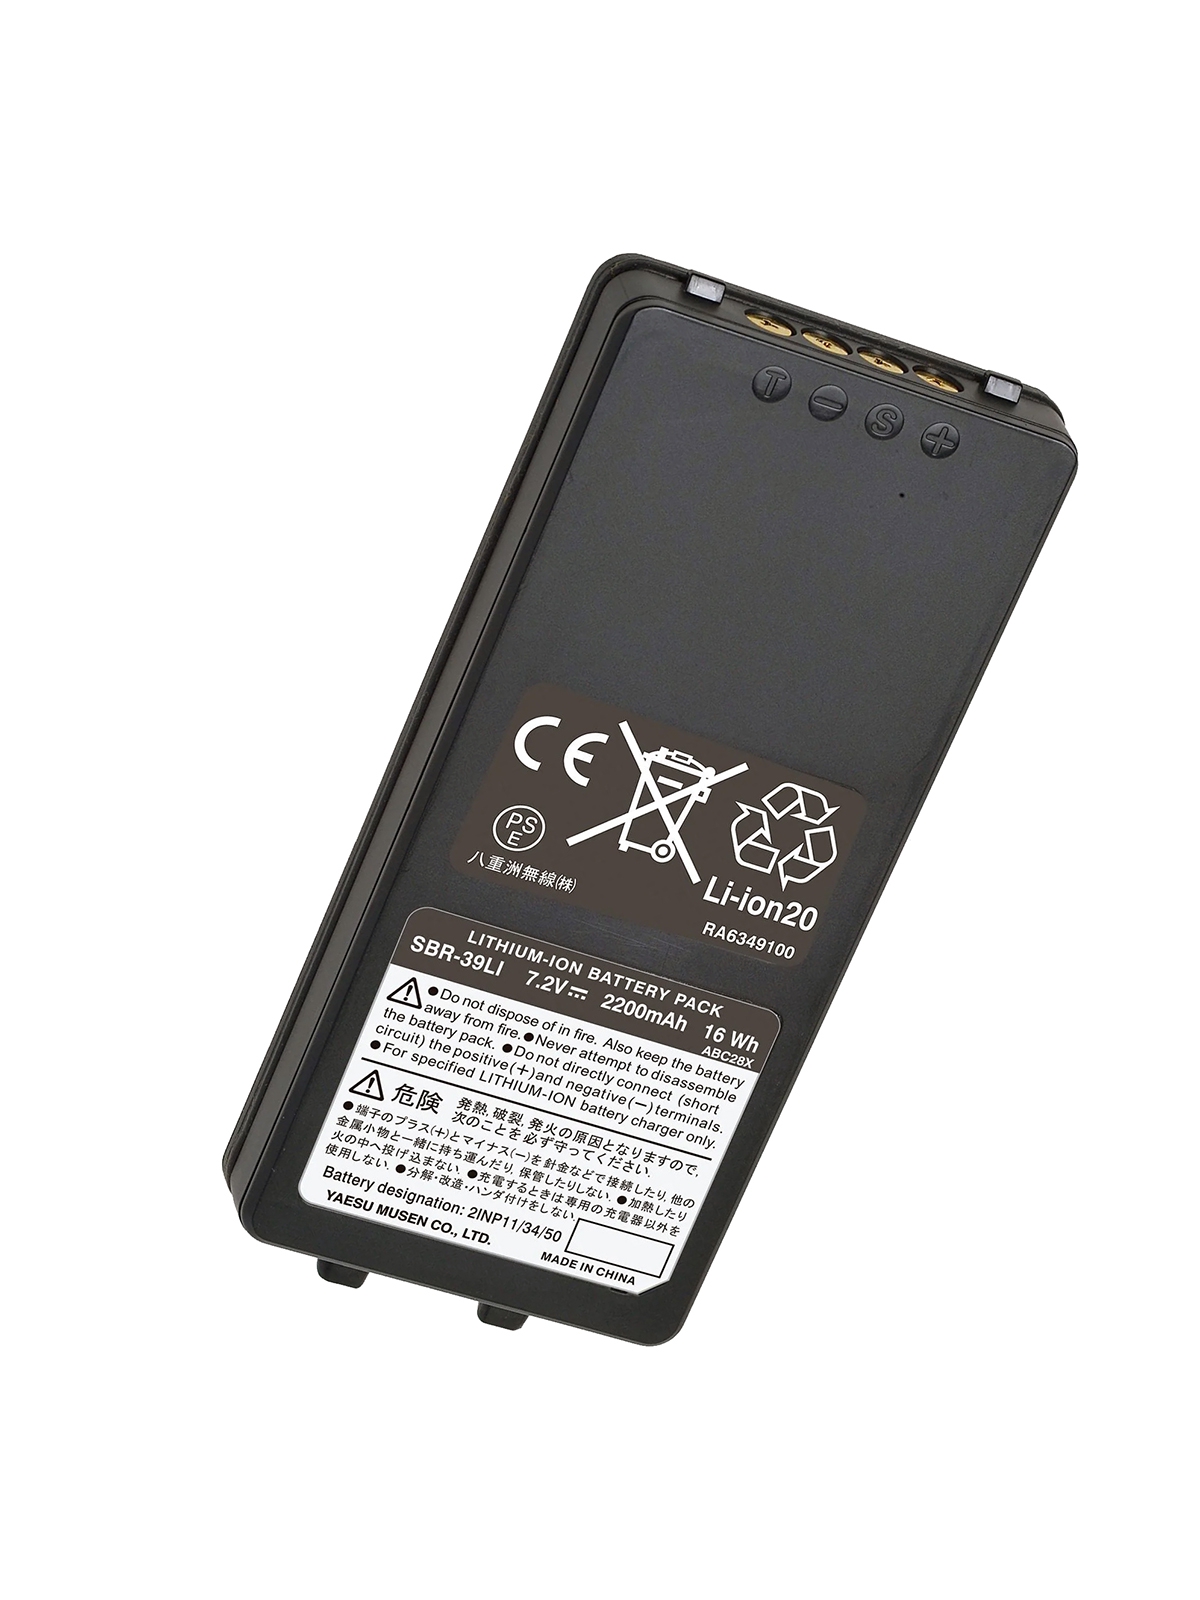 Yaesu Li-Ion Battery Pack for FTA-850L - 7.2 V, 2,200 mAh (SBR-39LI)